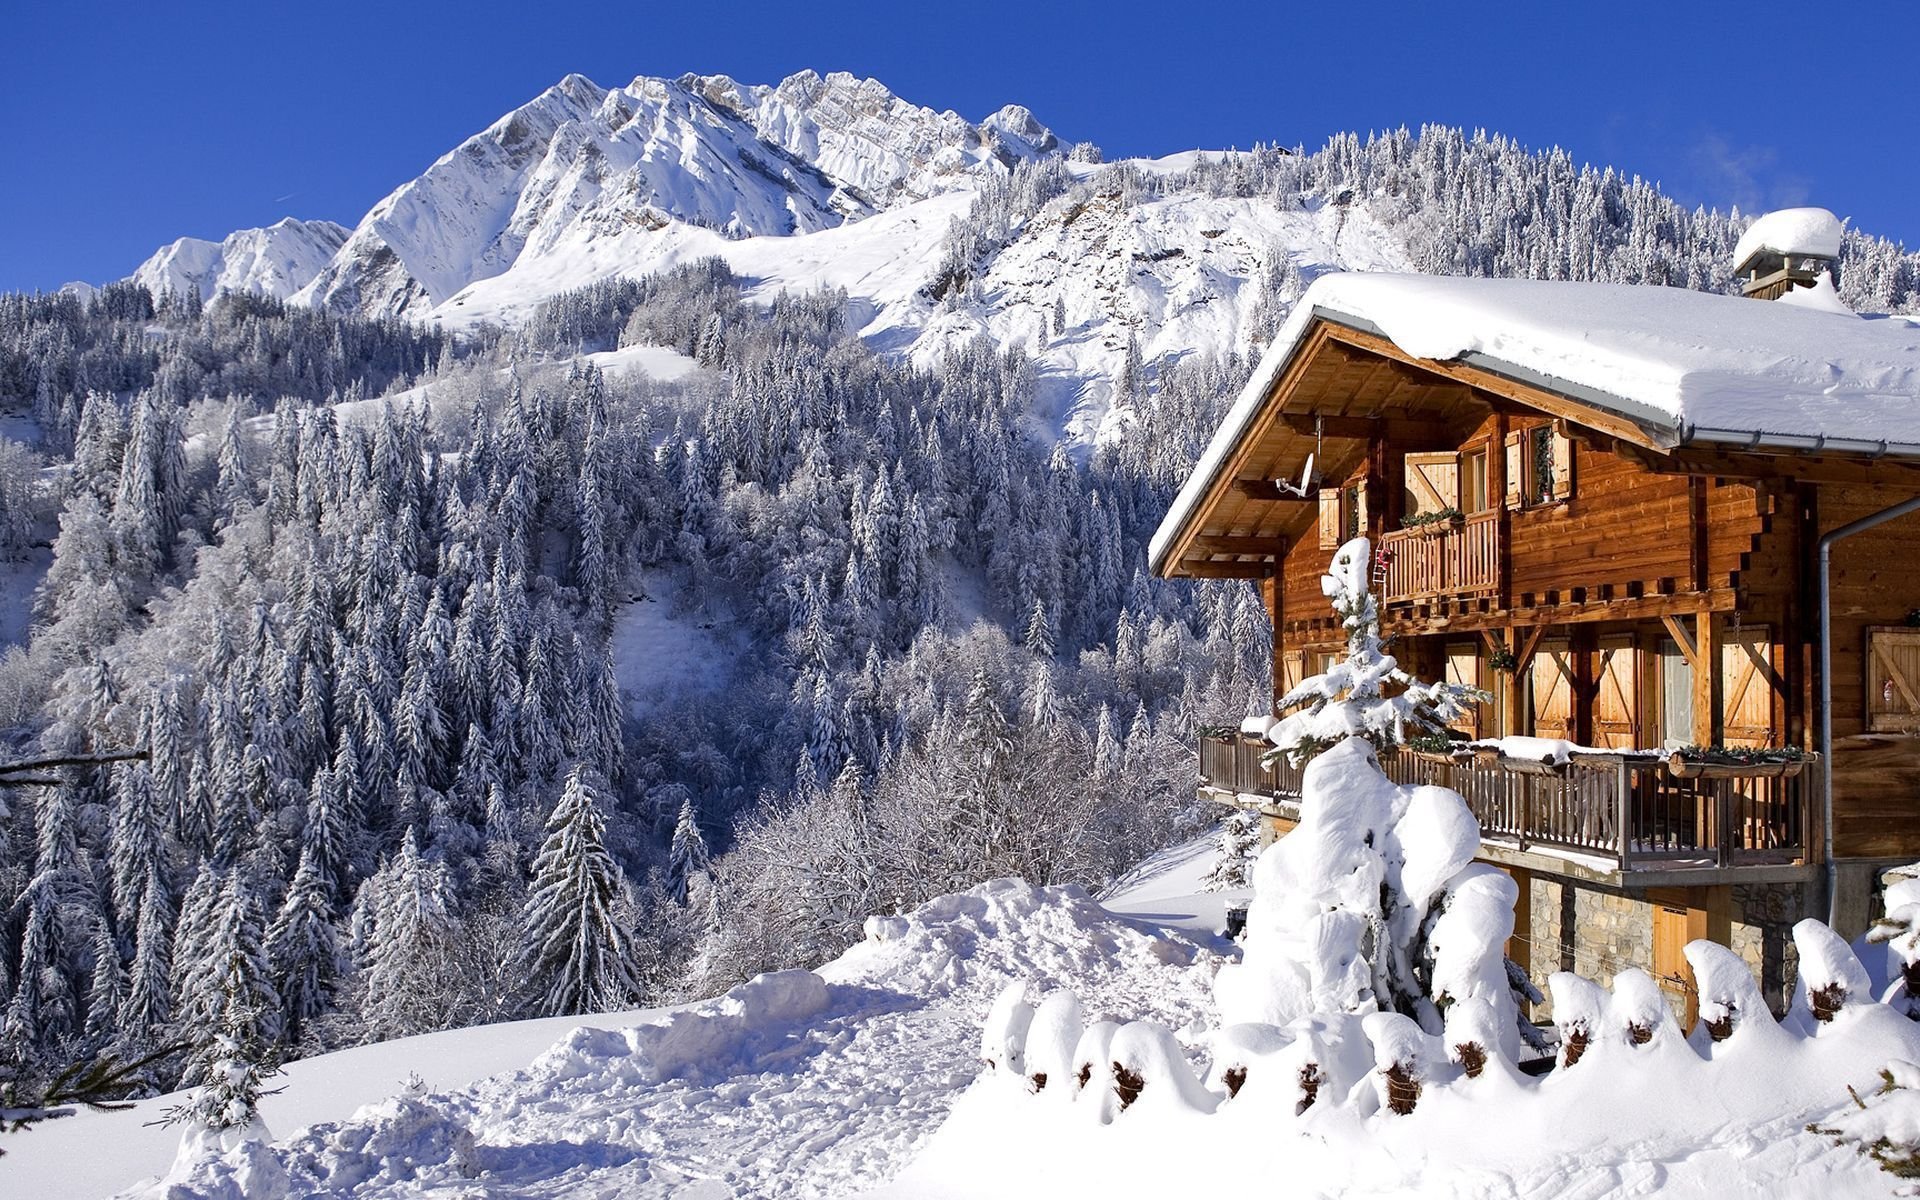 Швейцария домик в горах зима купить дом в сша дешево